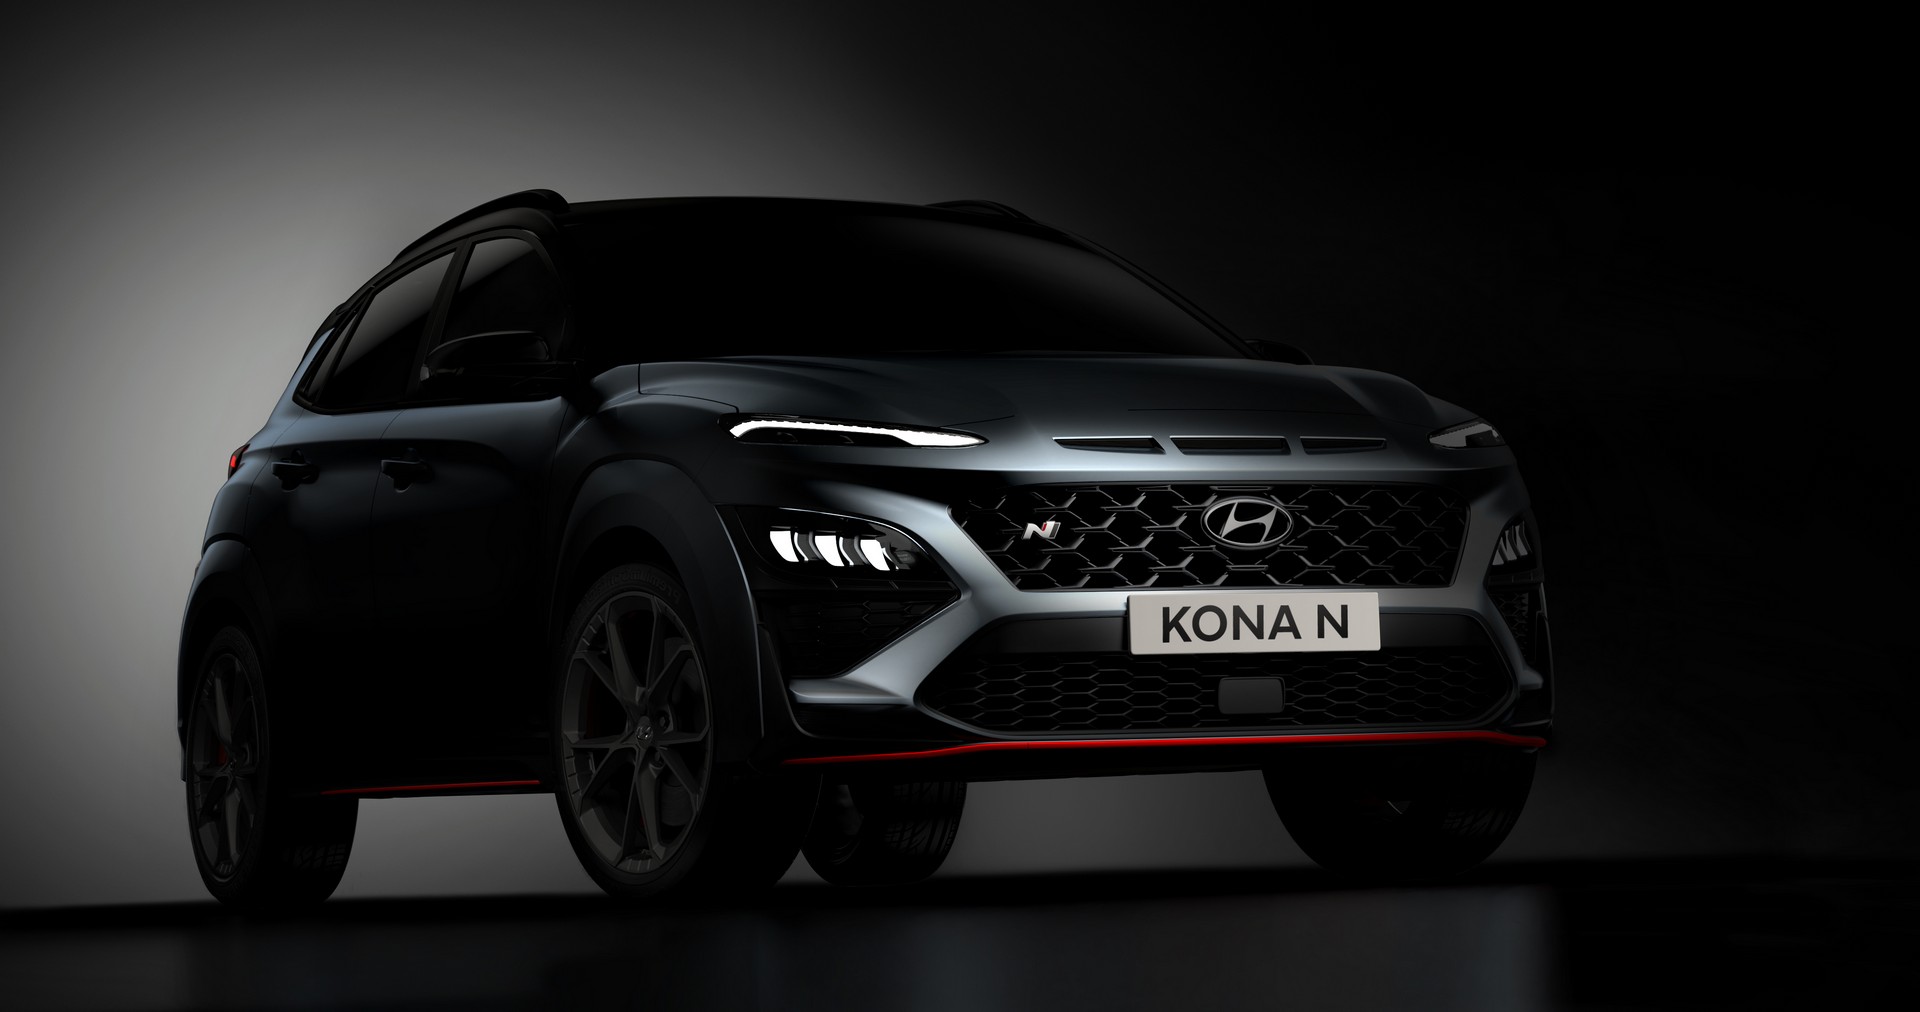 Hyundai xác nhận Kona N sắp ra mắt sẽ mạnh khoảng 276 mã lực Hyundai Kona N 2022 lộ diện với thiết kế đậm chất thể thao 2022-hyundai-kona-n-4.jpg